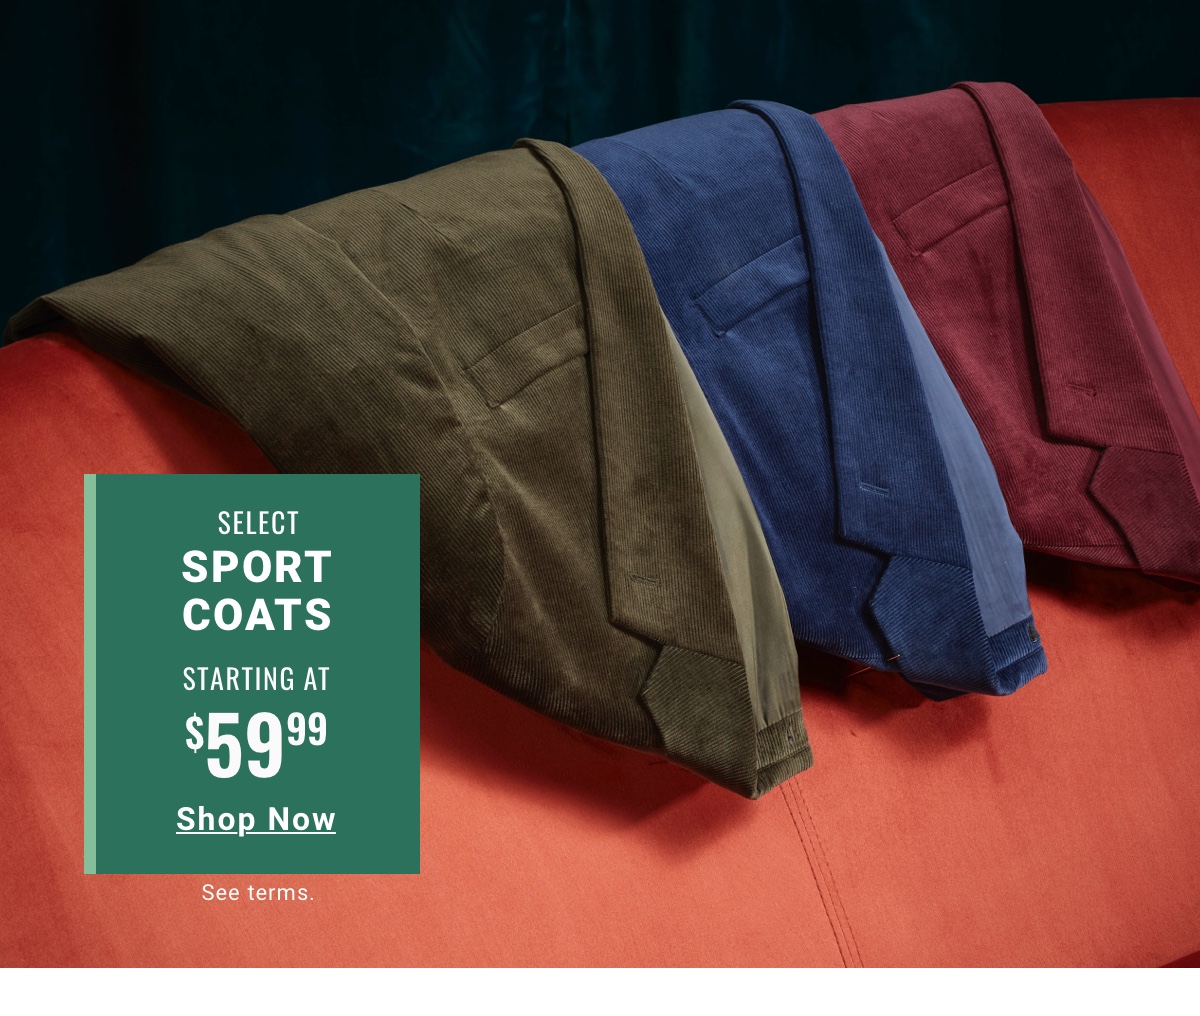 Select Sport Coats $59.99 Shop Now